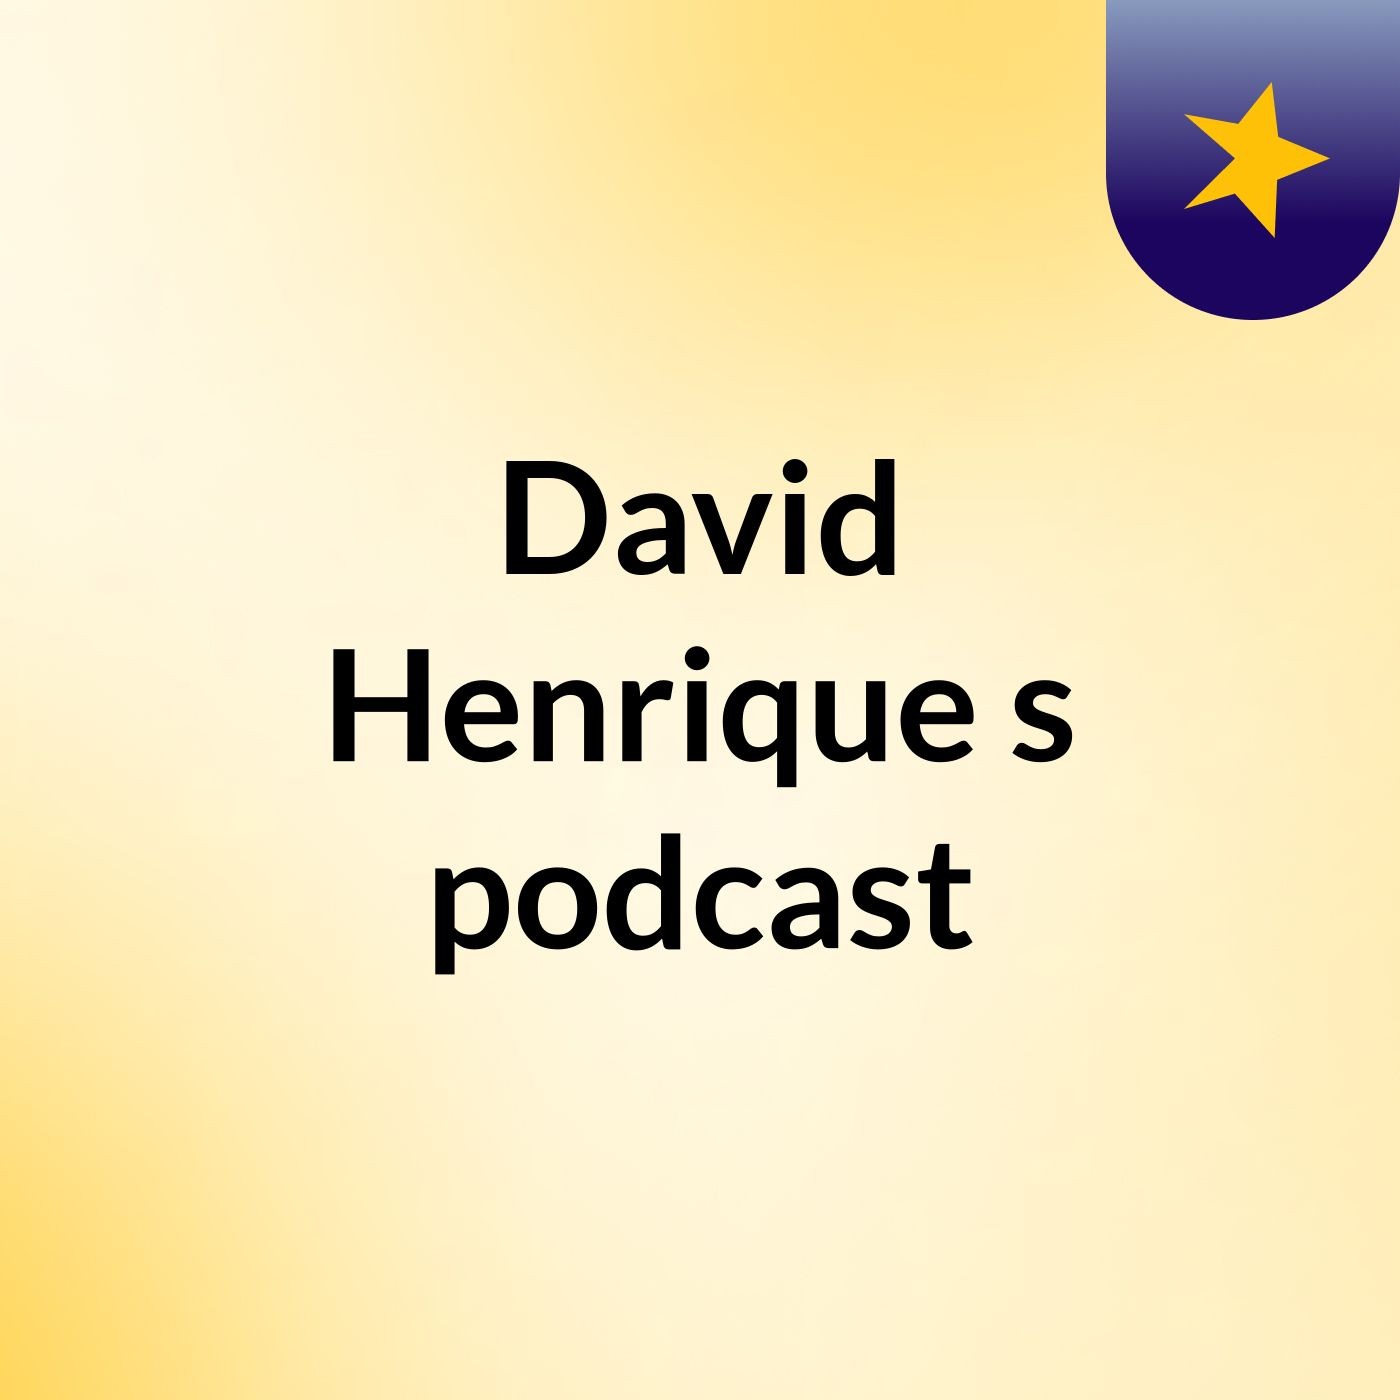 David Henrique's podcast